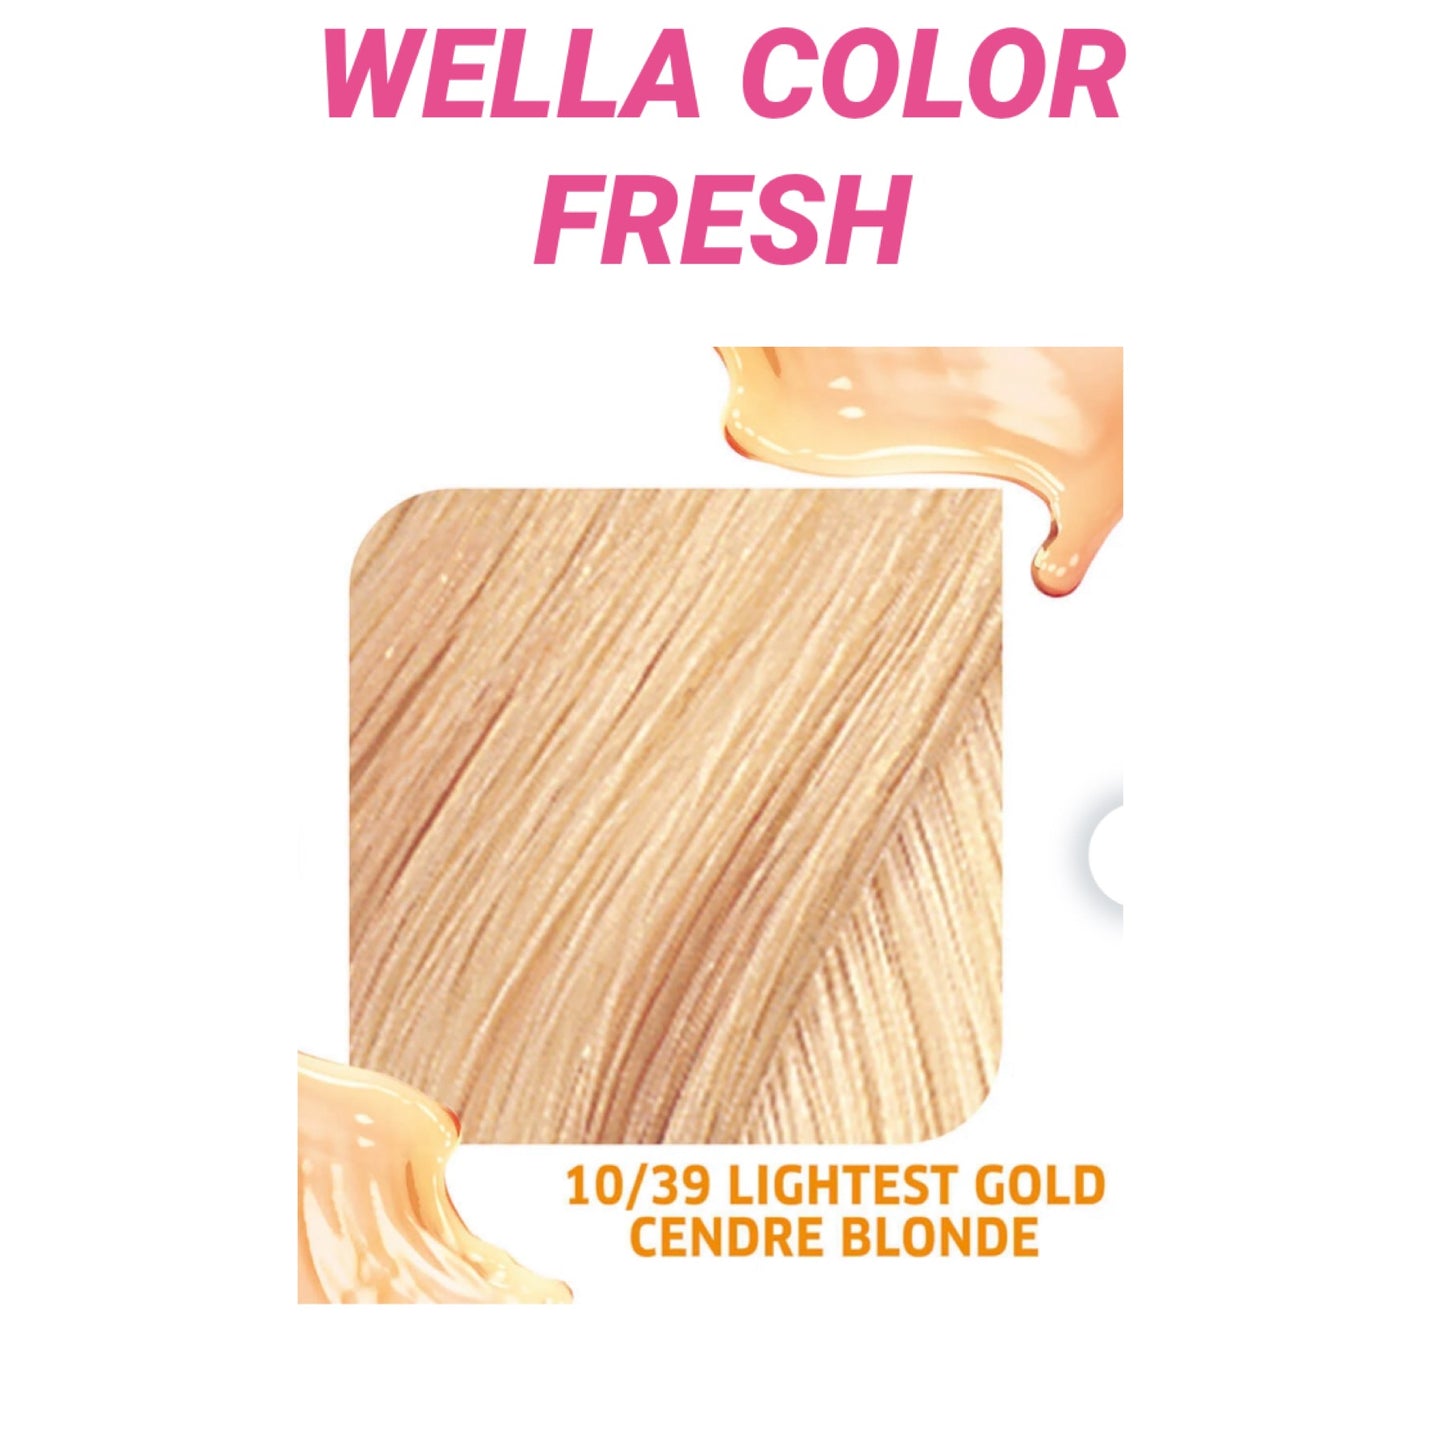 Wella Colour Fresh Semi Permanent Hair Colour 75ml